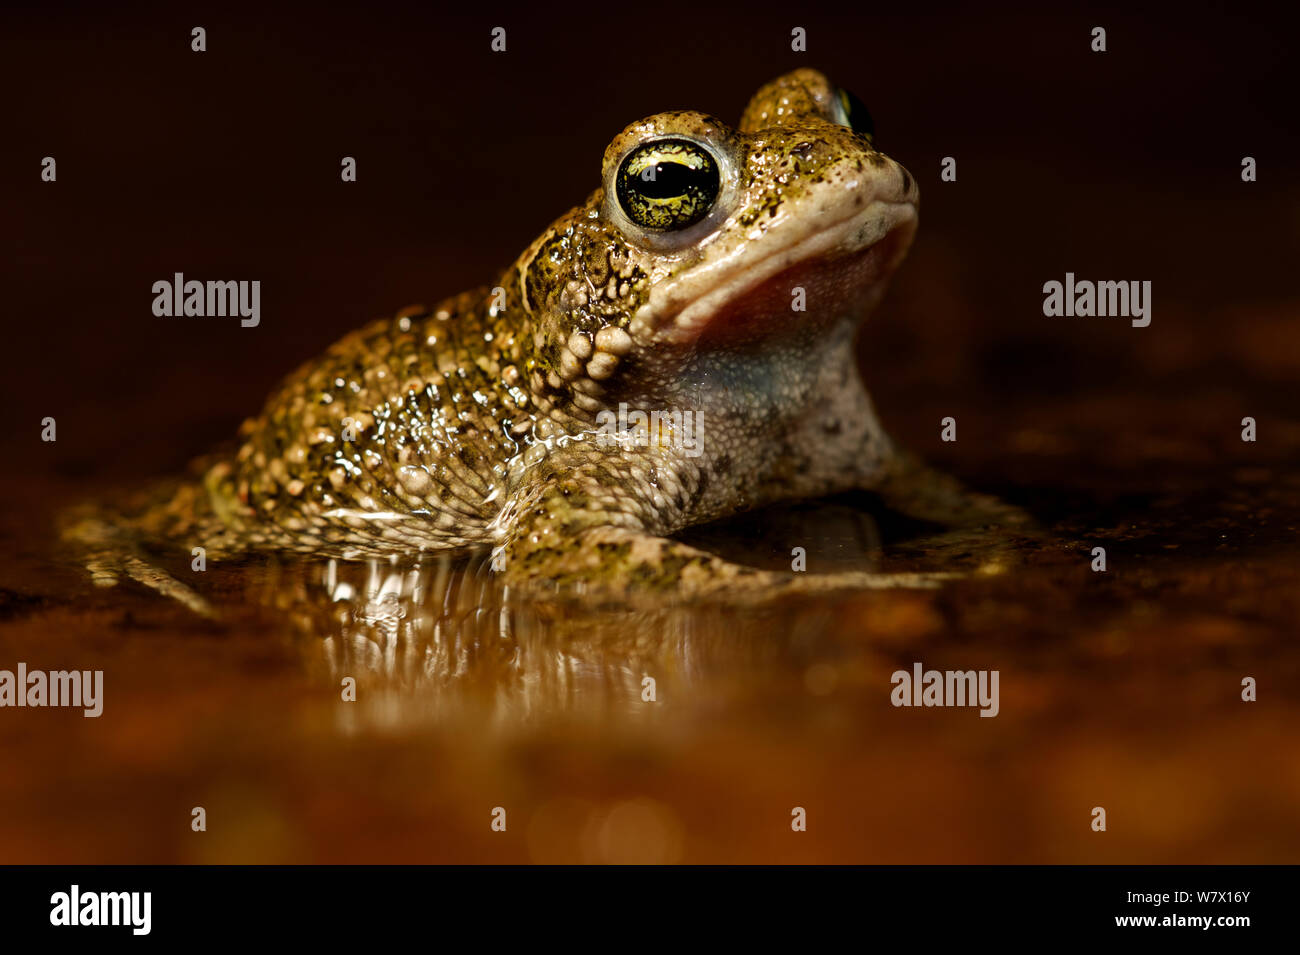 Natterjack toad (Epidalea / Bufo calamita) in acqua poco profonda con la riflessione. Belgio, Aprile. Foto Stock